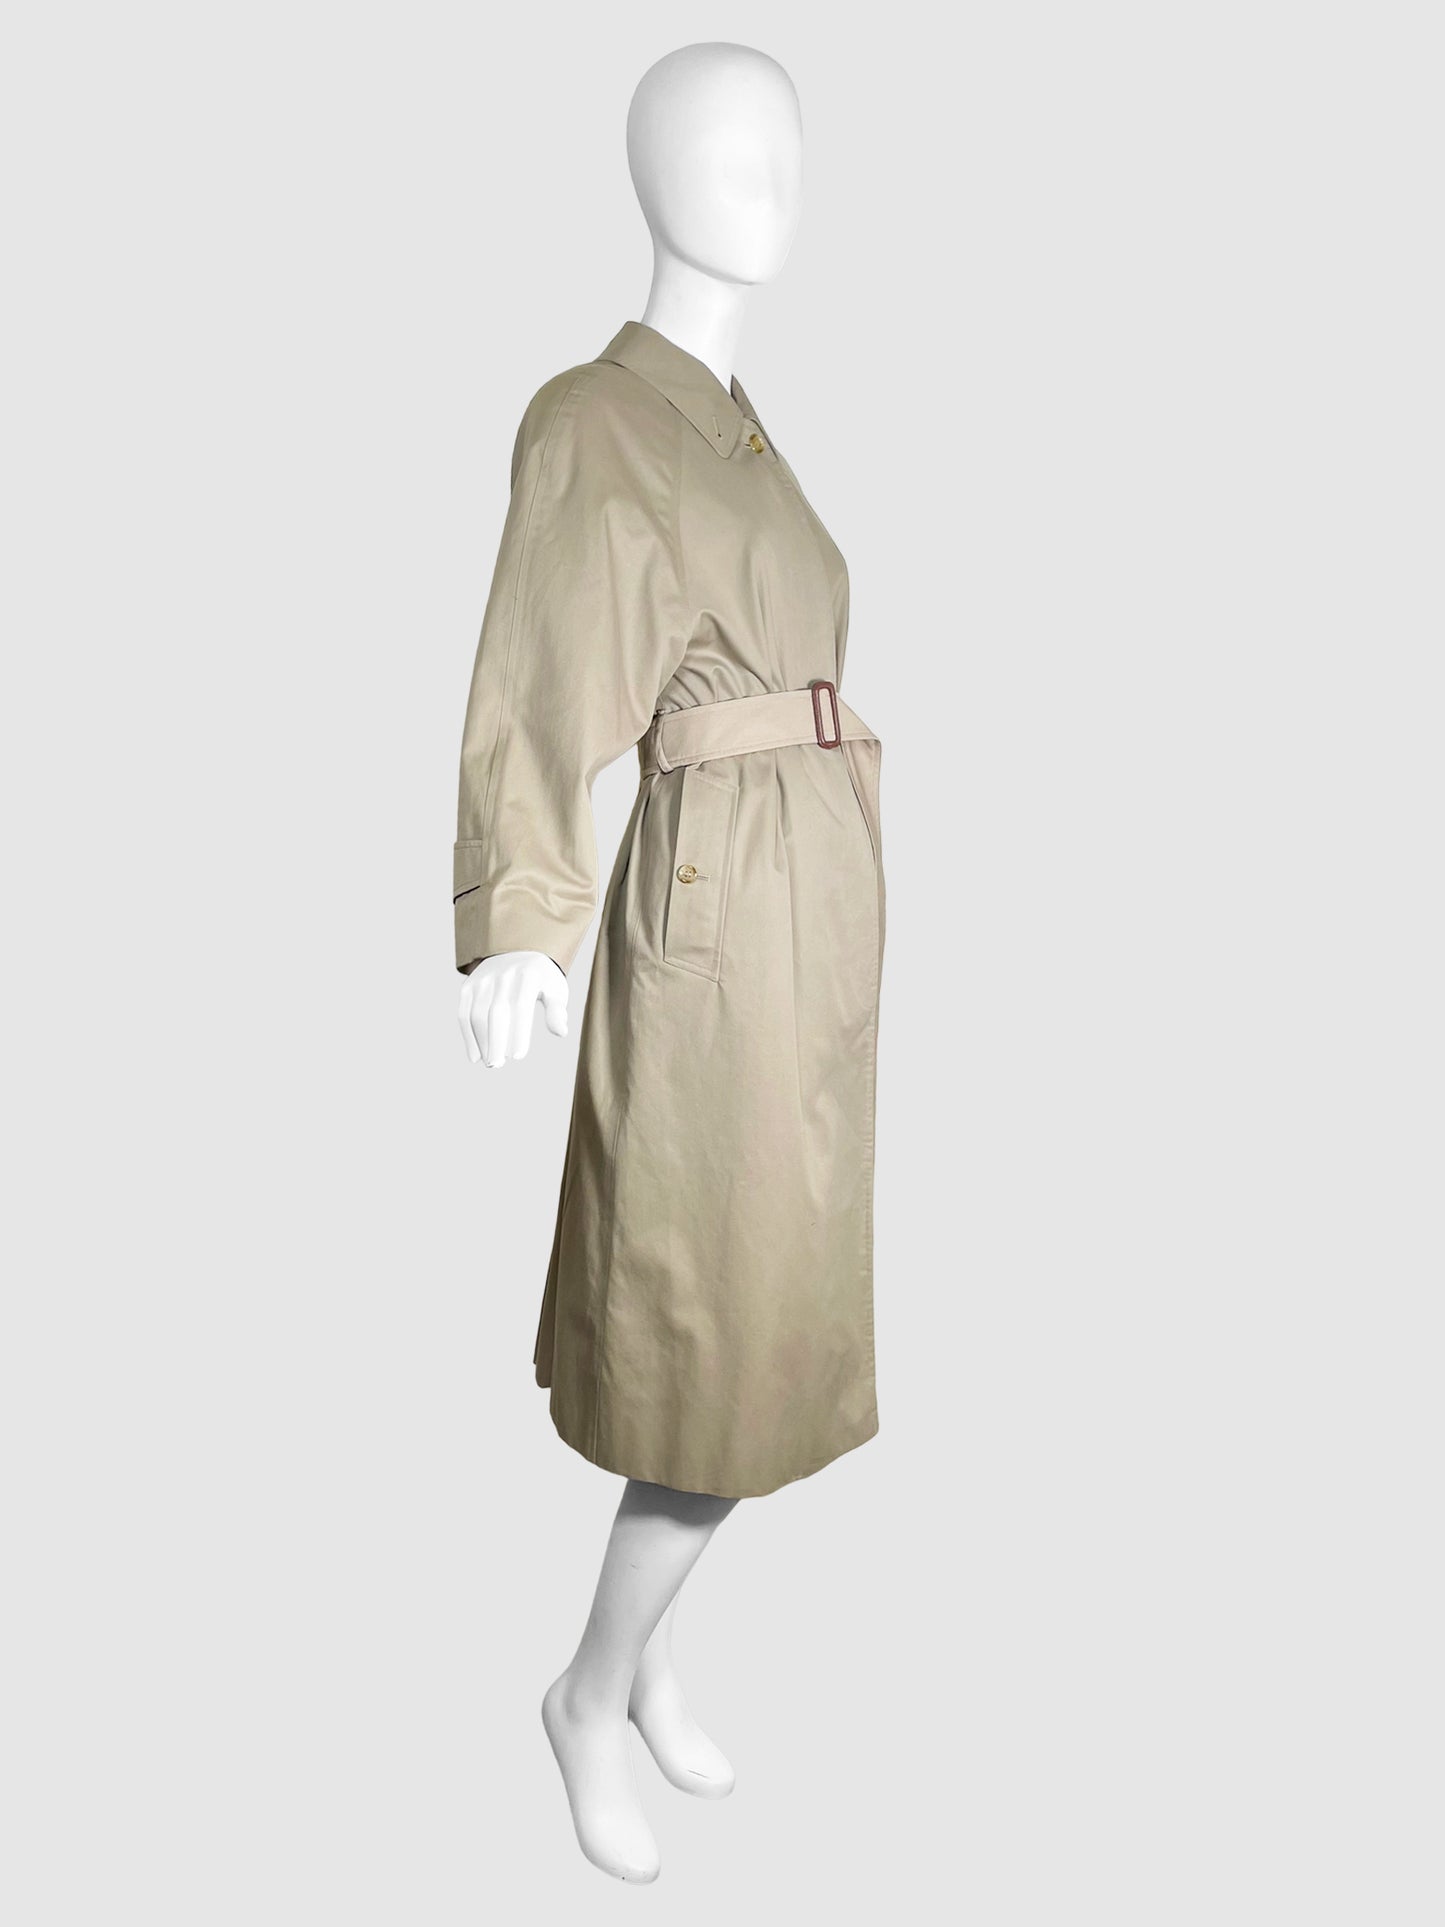 Burberrys Long Rain Coat with Belt - Size M/L